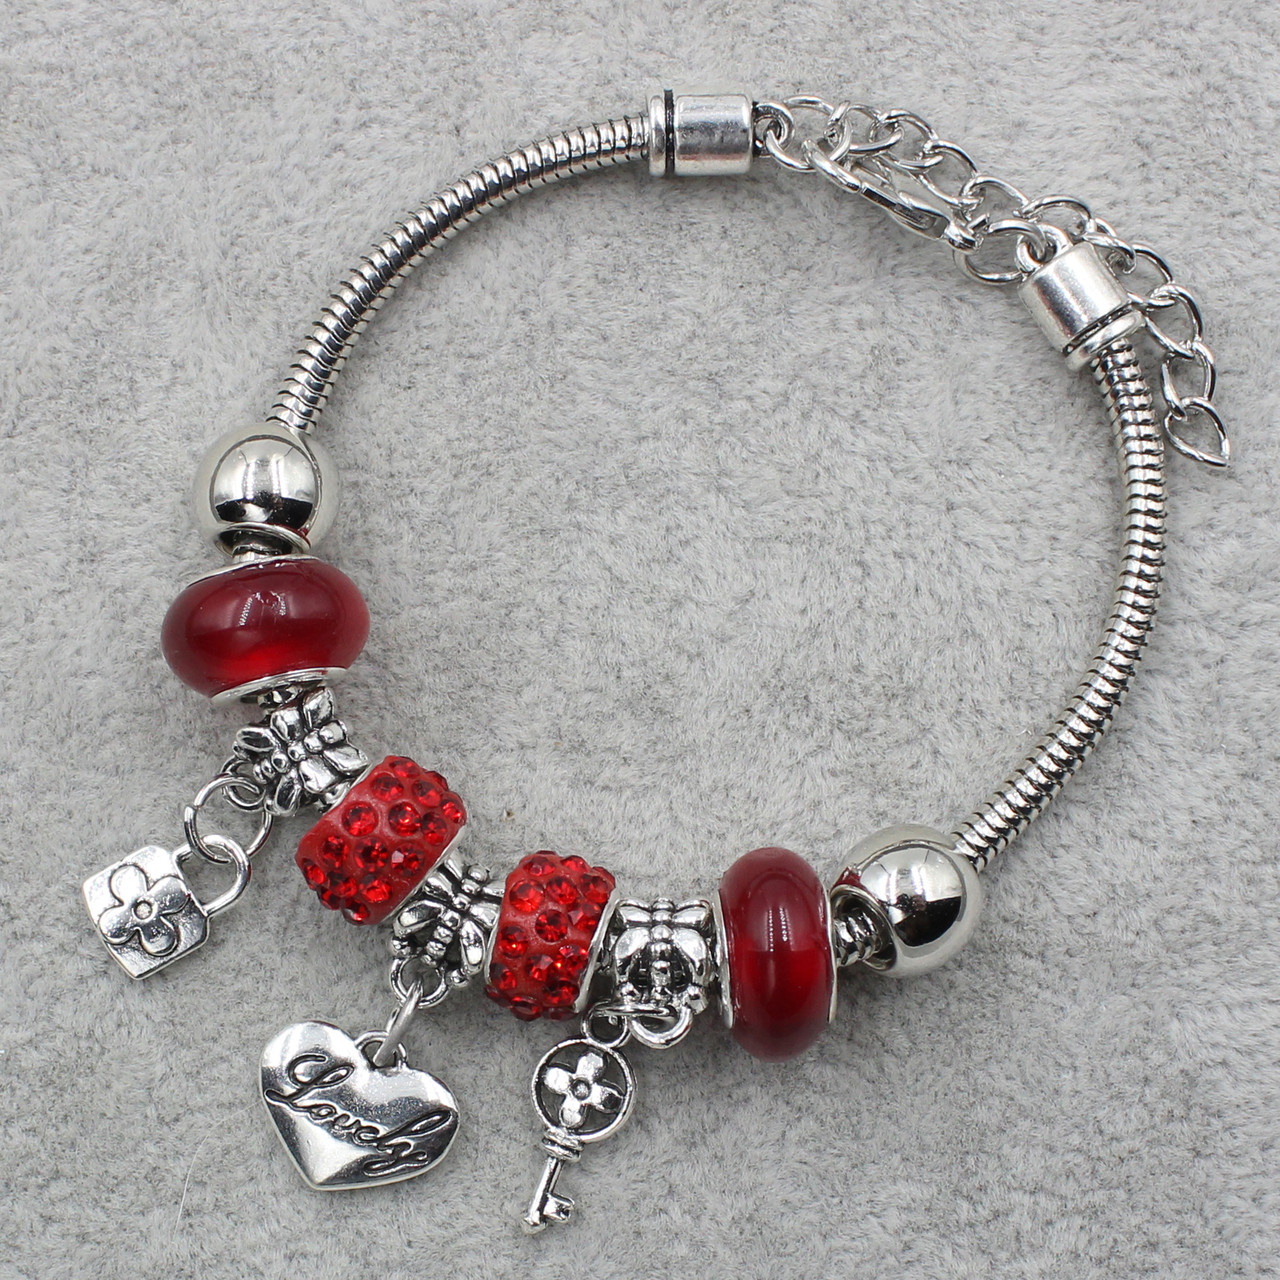 Pandora браслет серебристого цвета дерево с красными шармами 9 штук длина браслета 22 см ширина 3 мм